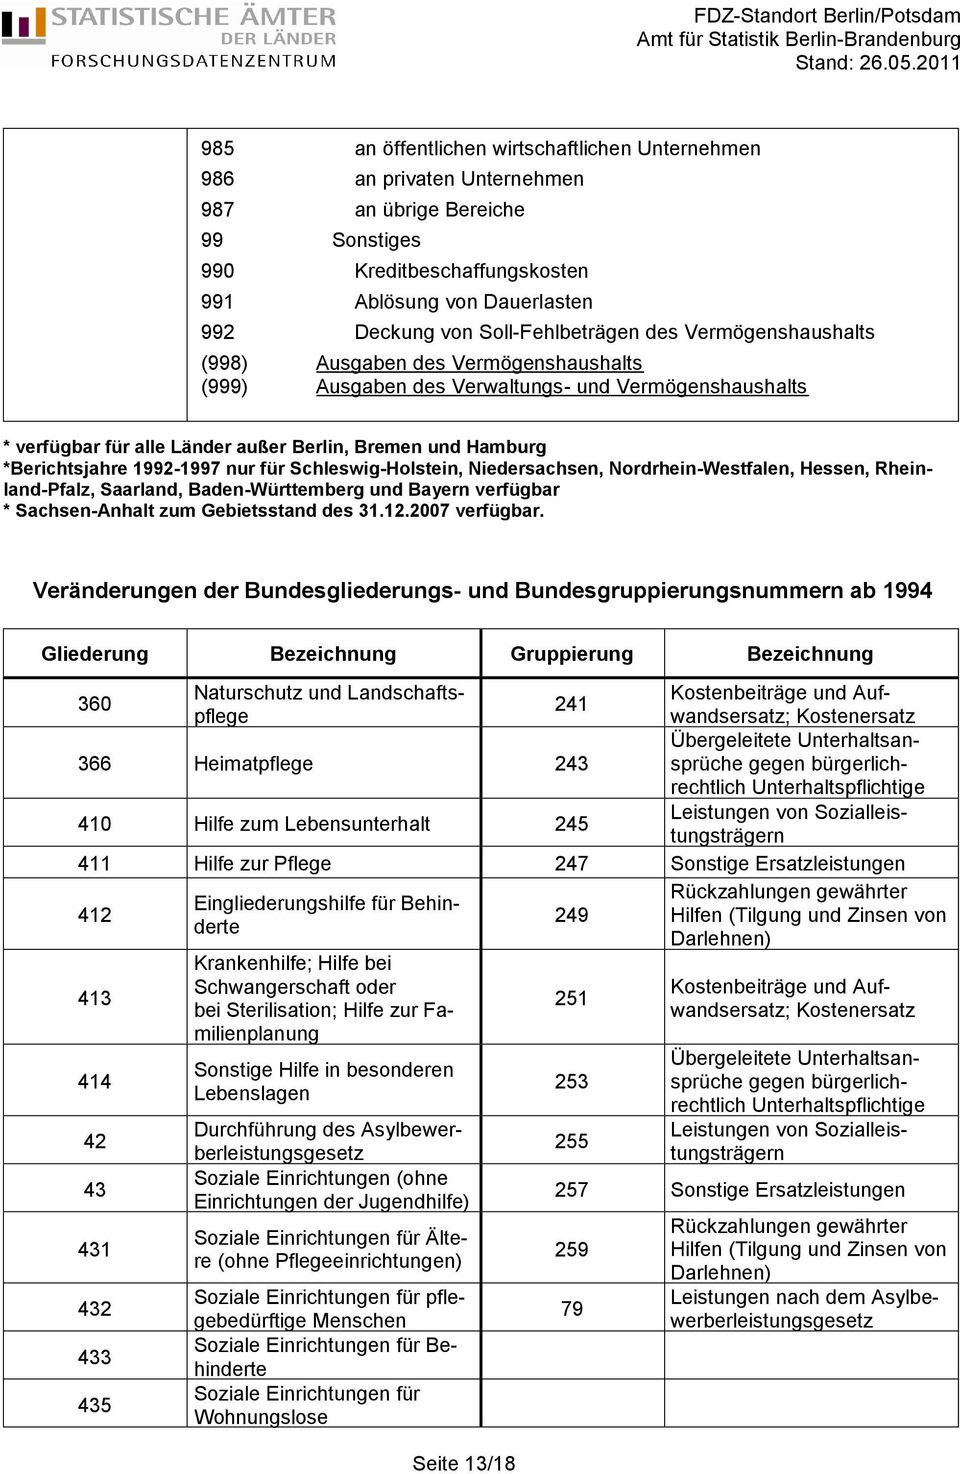 *Berichtsjahre 1992-1997 nur für Schleswig-Holstein, Niedersachsen, Nordrhein-Westfalen, Hessen, Rheinland-Pfalz, Saarland, Baden-Württemberg und Bayern verfügbar * Sachsen-Anhalt zum Gebietsstand